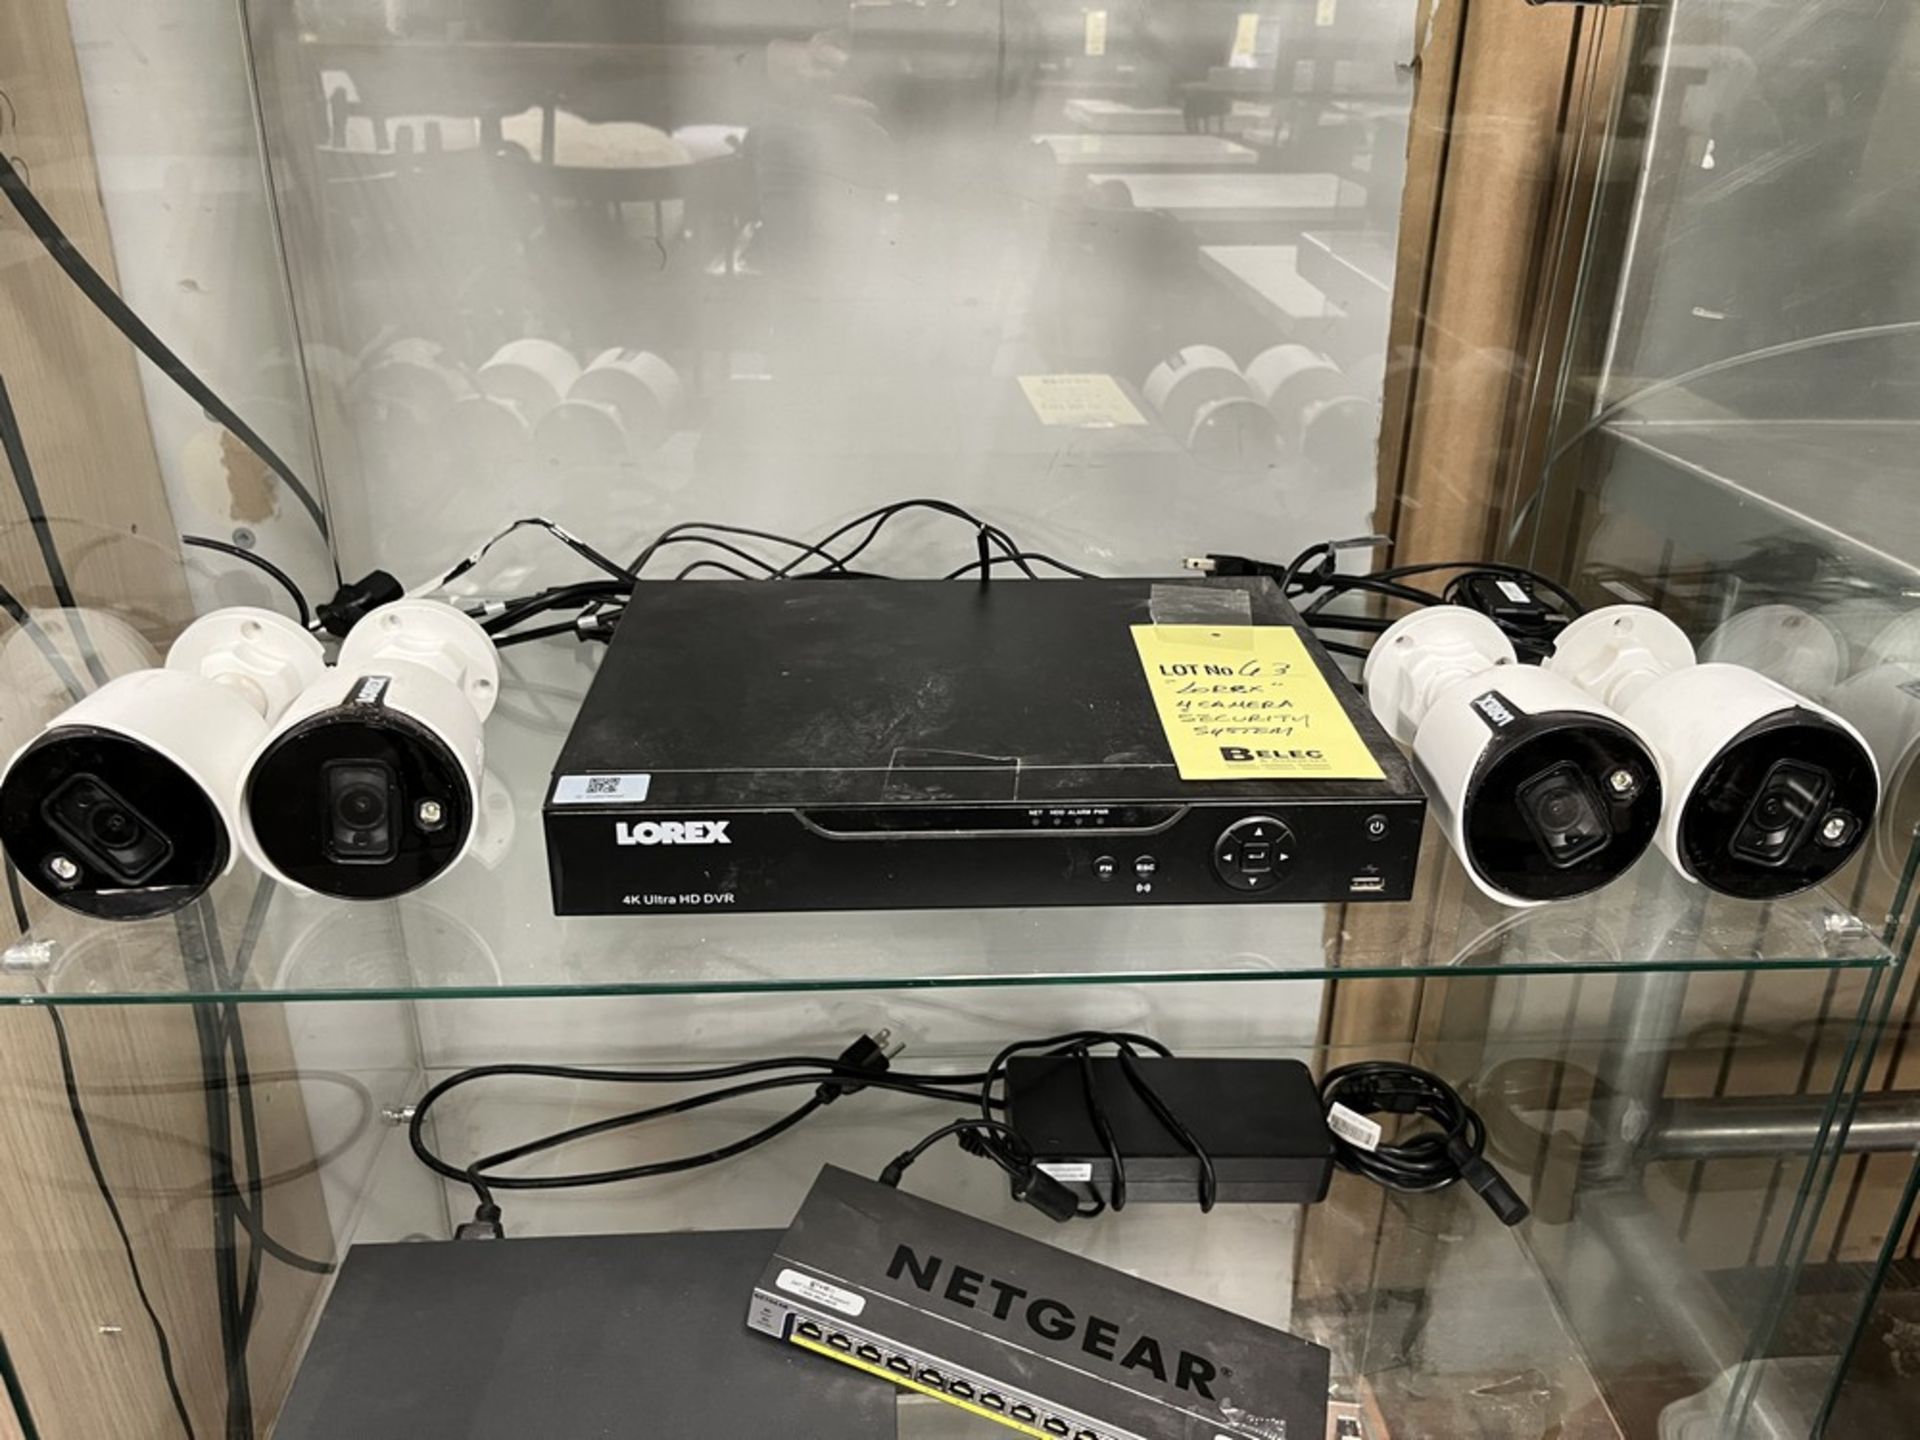 Systeme de surveillance LOREX - 4 cameras